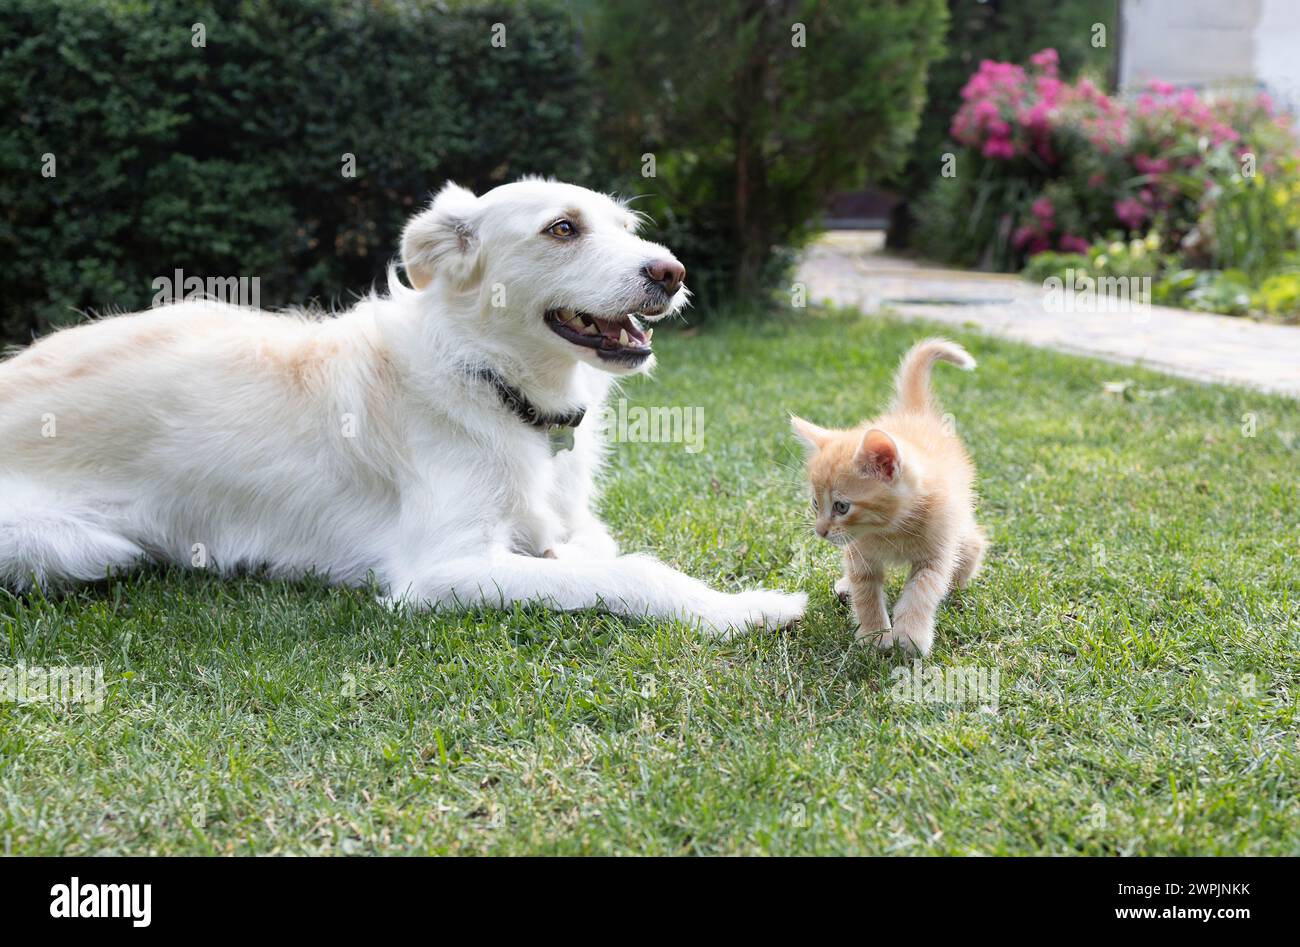 un grande cane bianco giace sull'erba e un curioso gattino rosso cammina nelle vicinanze. Incontro amichevole di animali domestici, relazioni tra animali, soggiorno Foto Stock